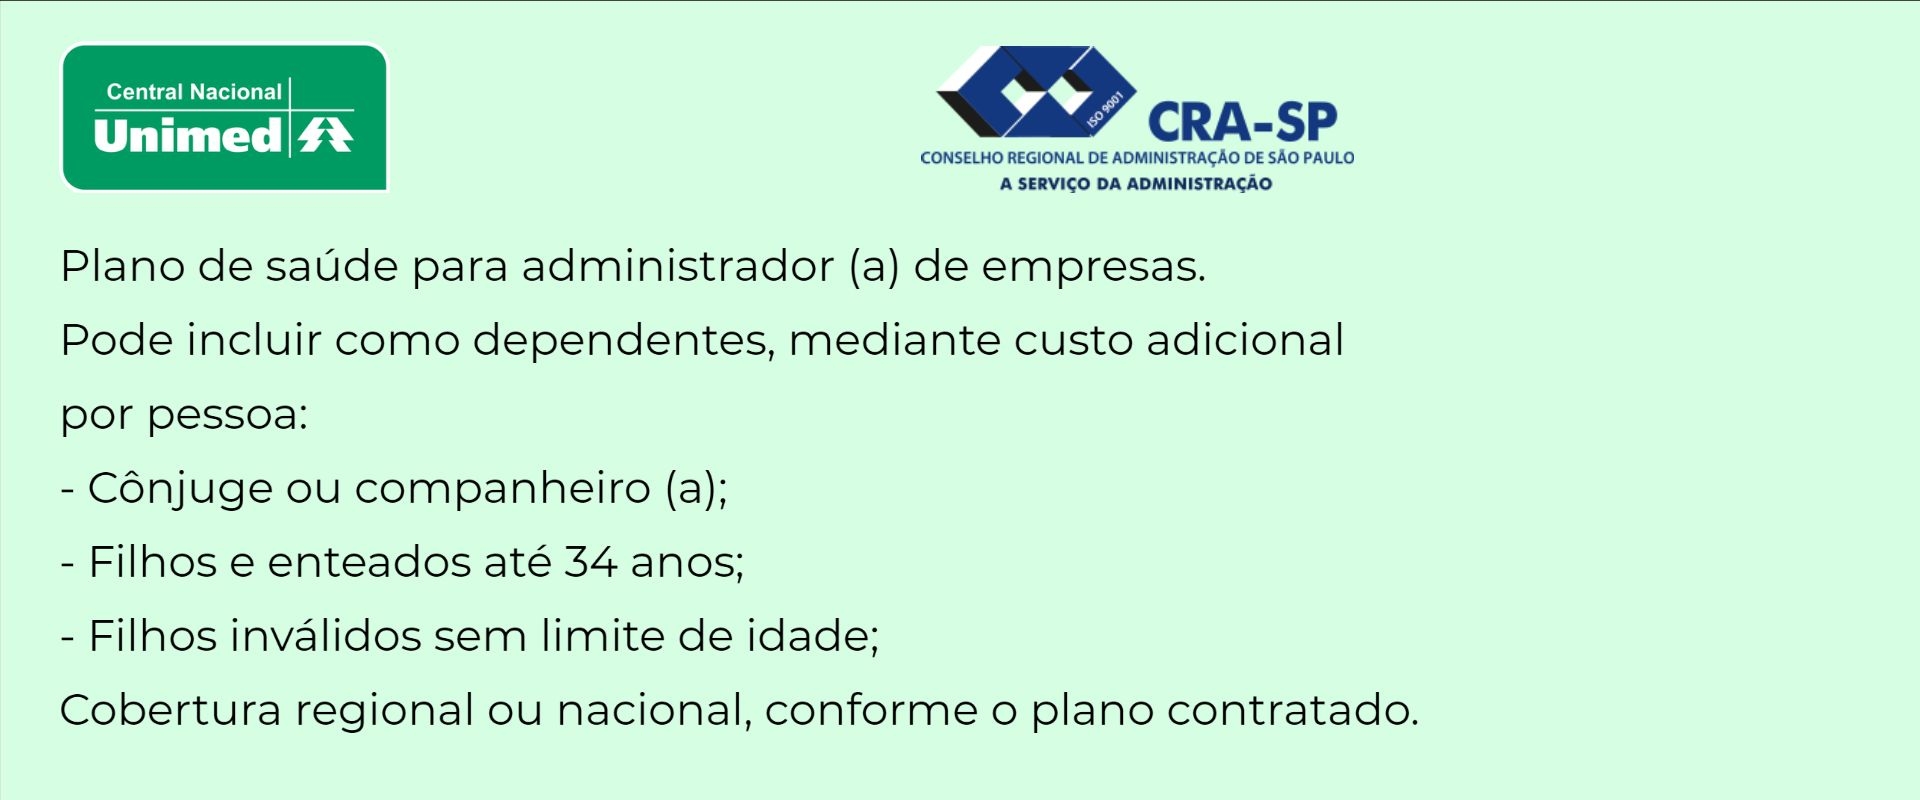 Unimed CRA-SP